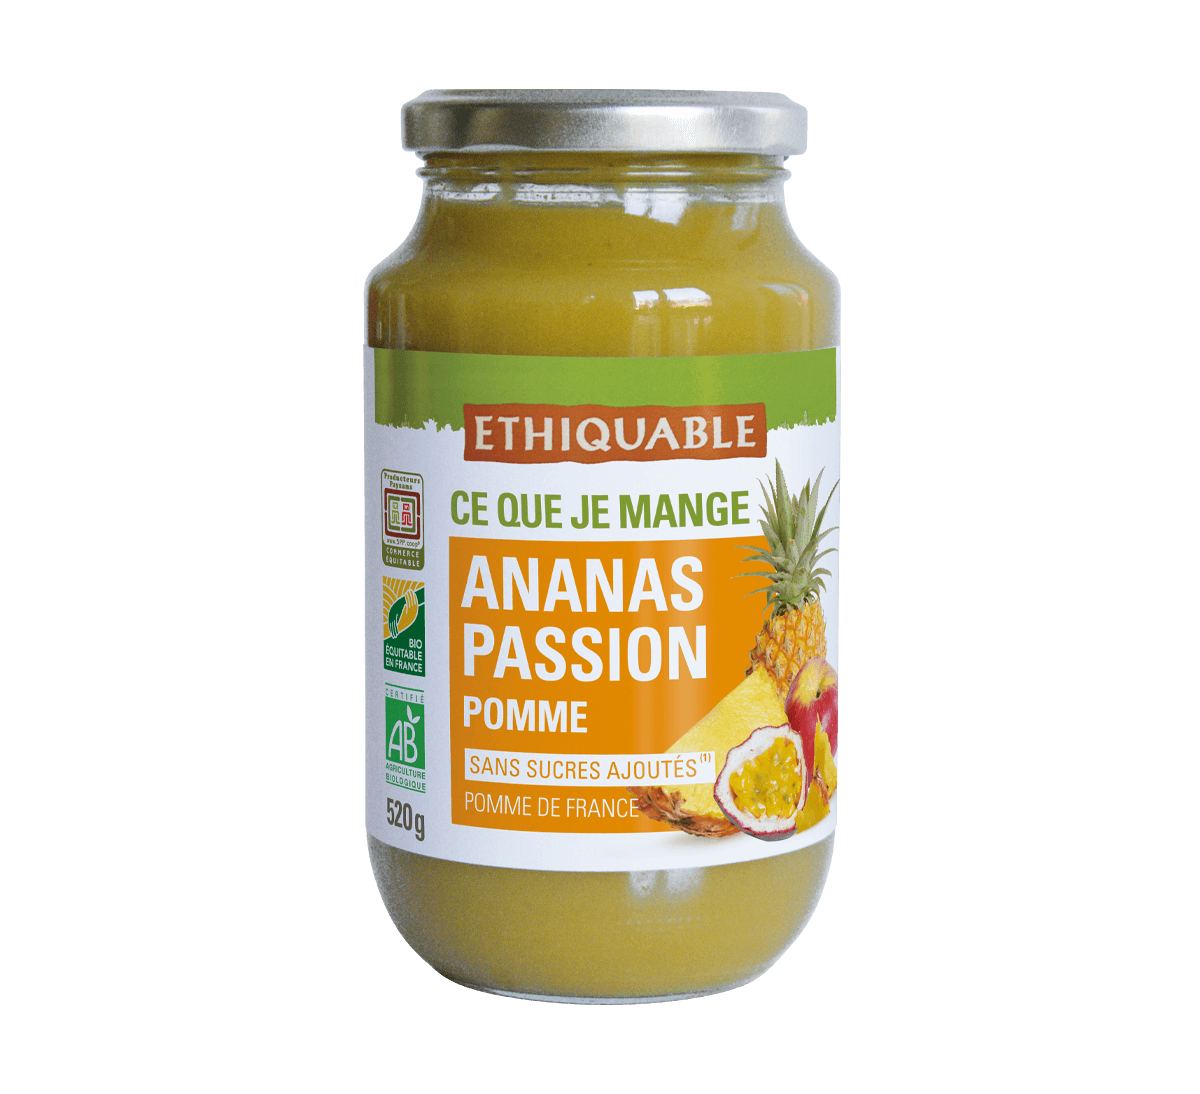 Ethiquable - Purée bio ananas passion pomme en bocal issu du Commerce Equitable